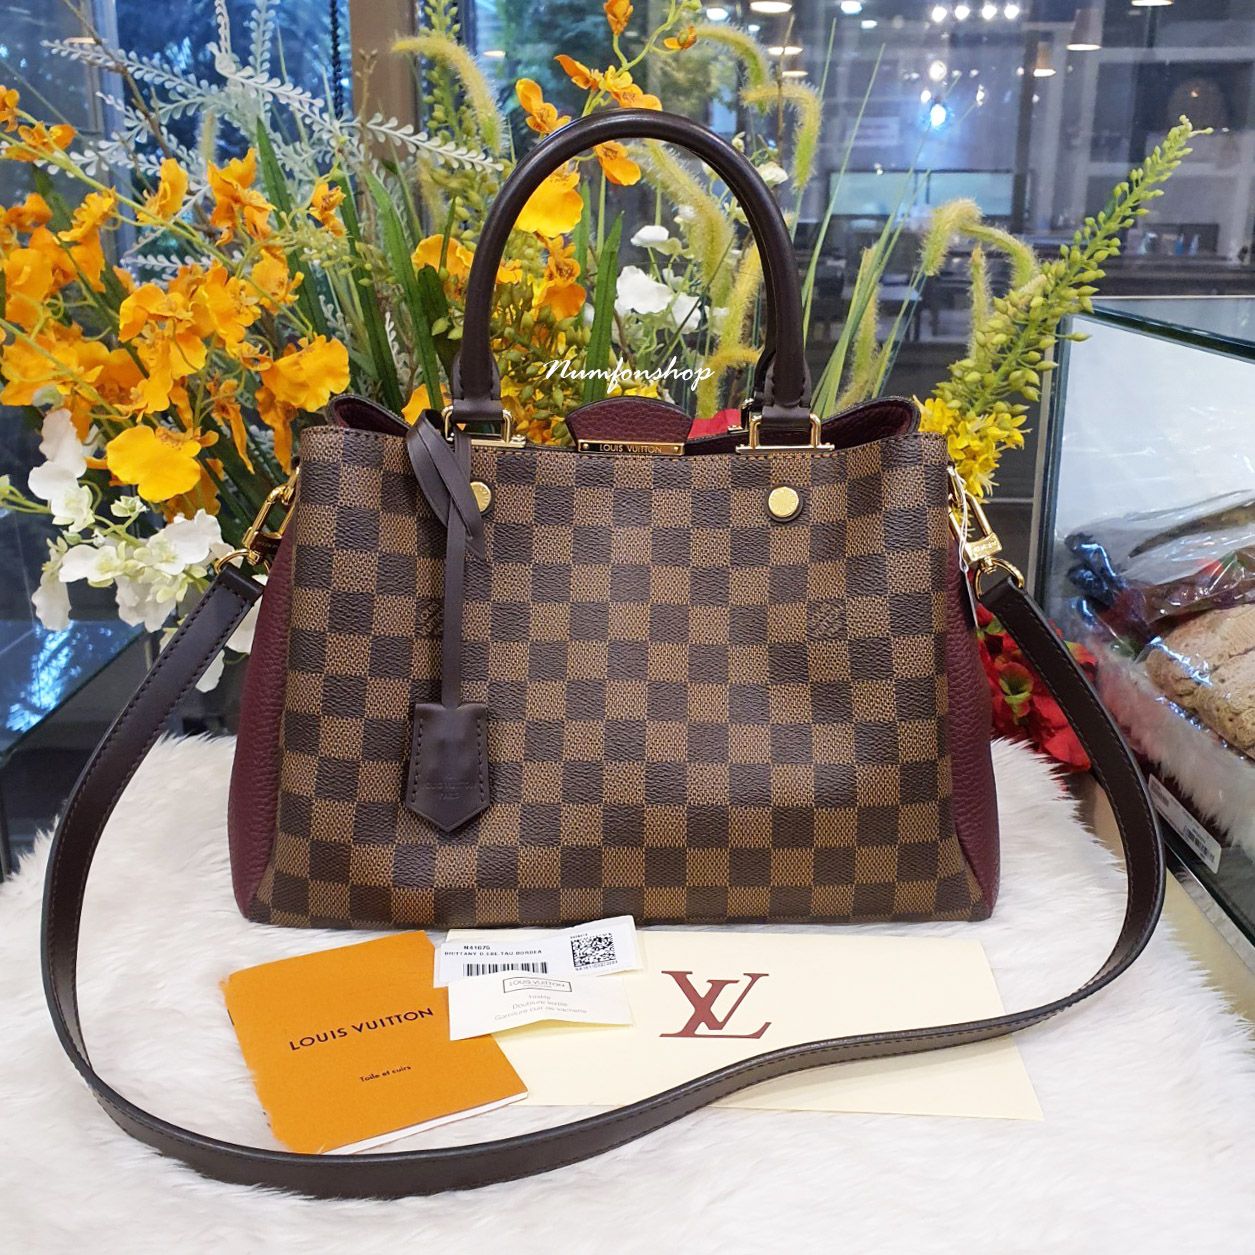 N41674 Louis Vuitton 2016 Damier Canvas Brittany Handbag -3 Colors